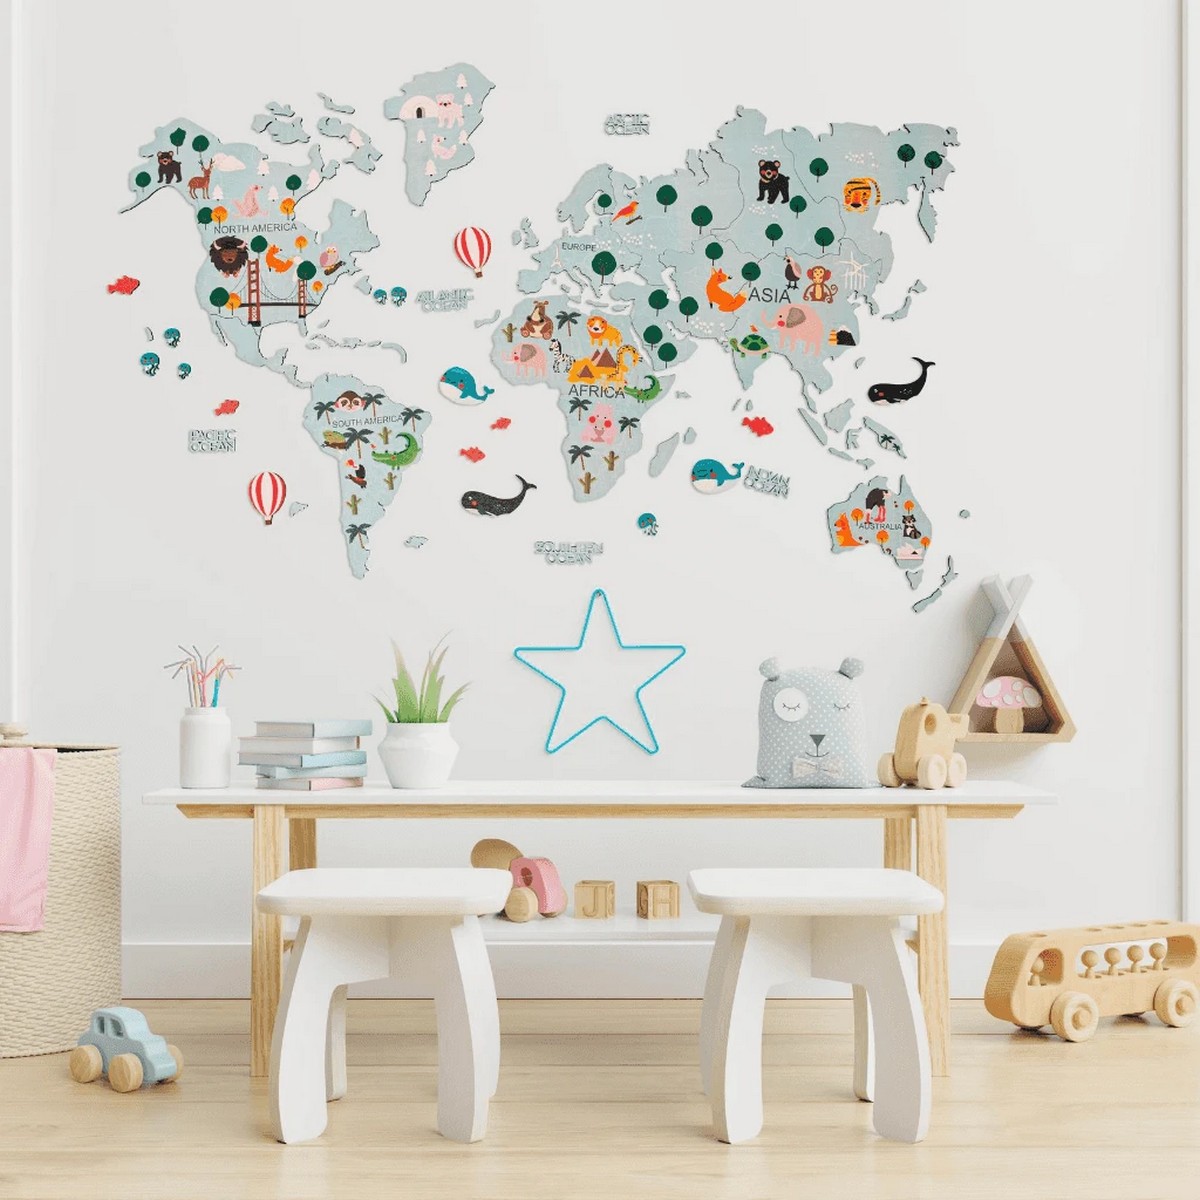 Peta dunia untuk kanak-kanak